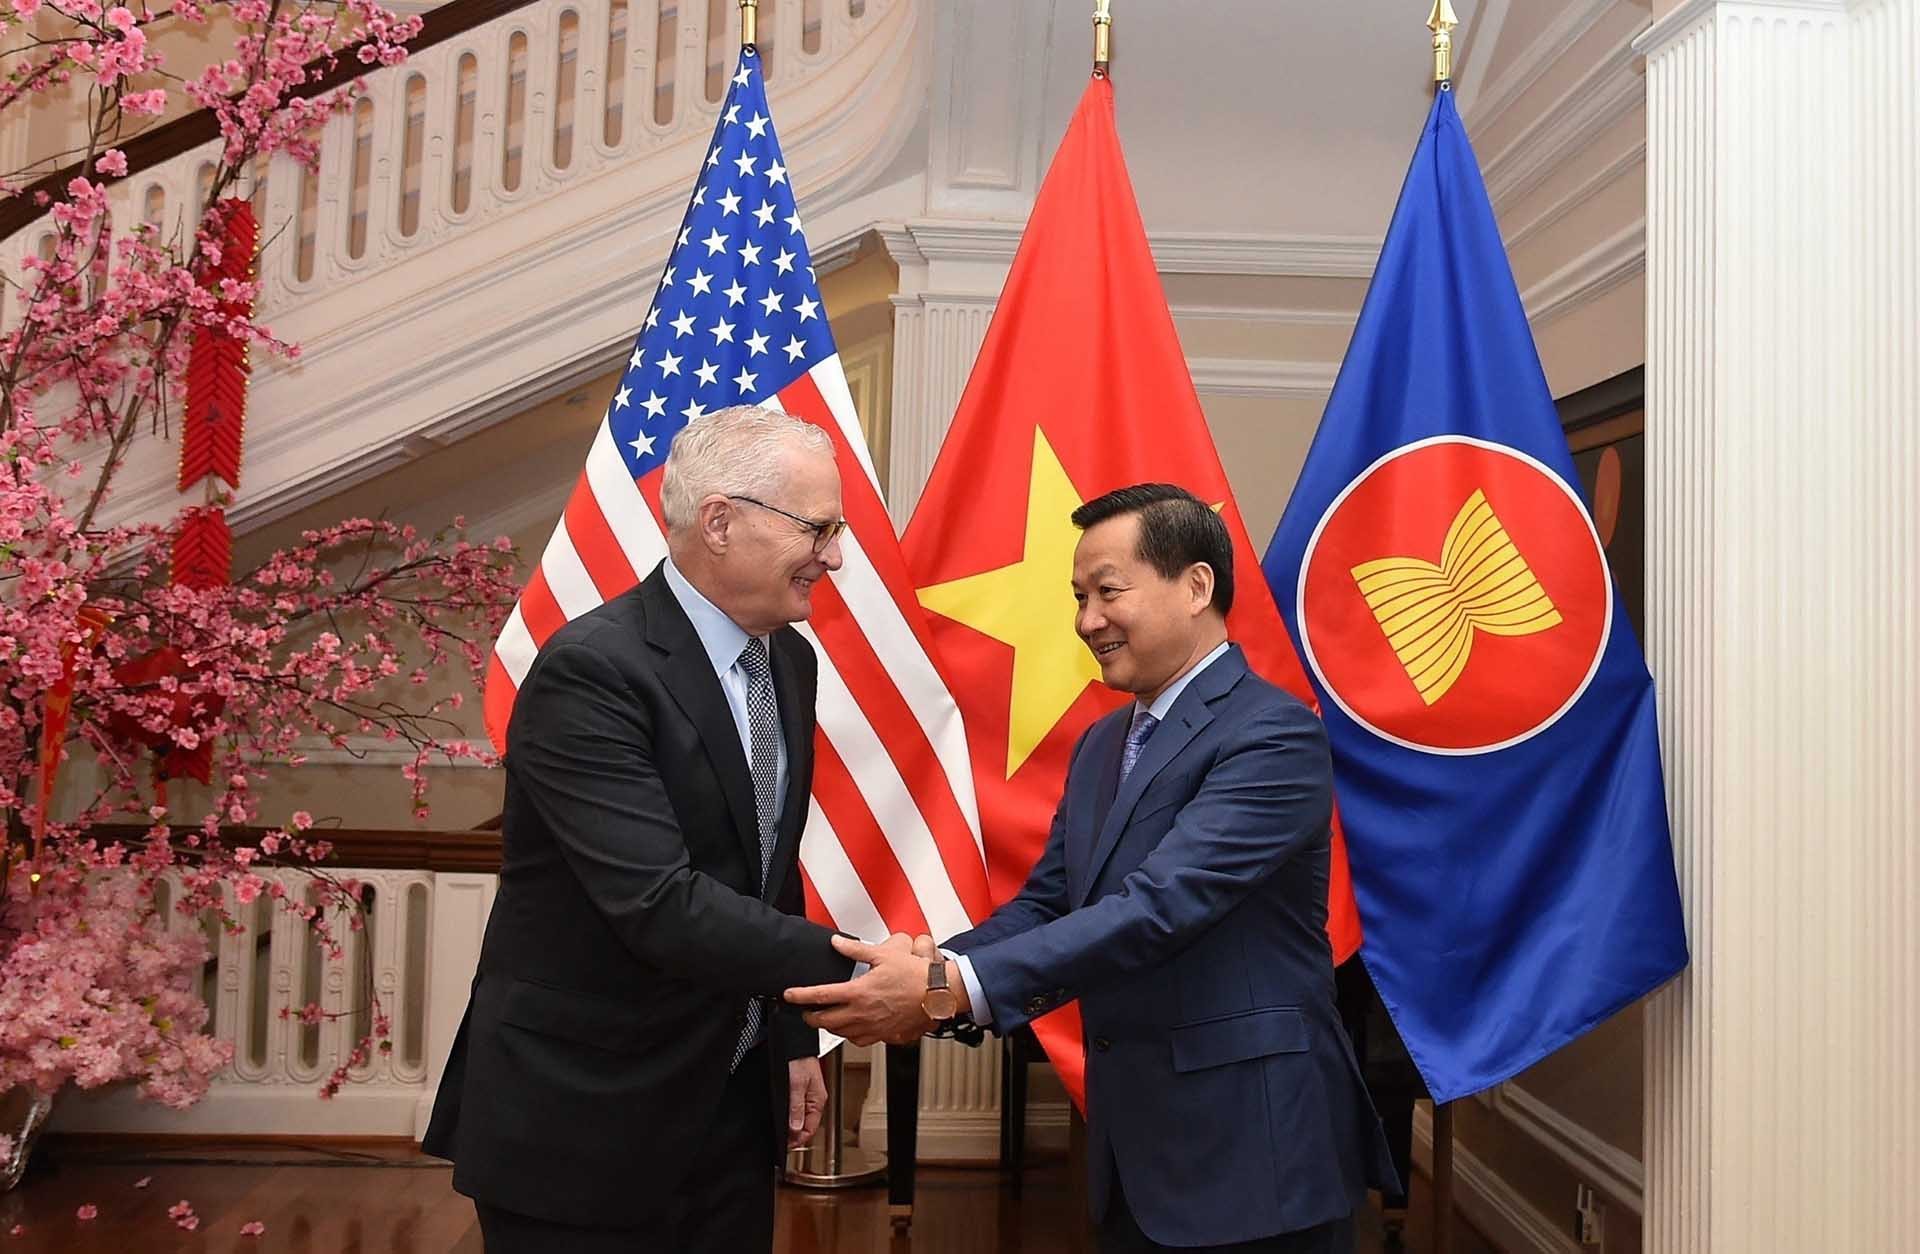 Phó Thủ tướng Lê Minh Khái gặp gỡ, trao đổi với giới chức và một số doanh nghiệp lớn của Hoa Kỳ